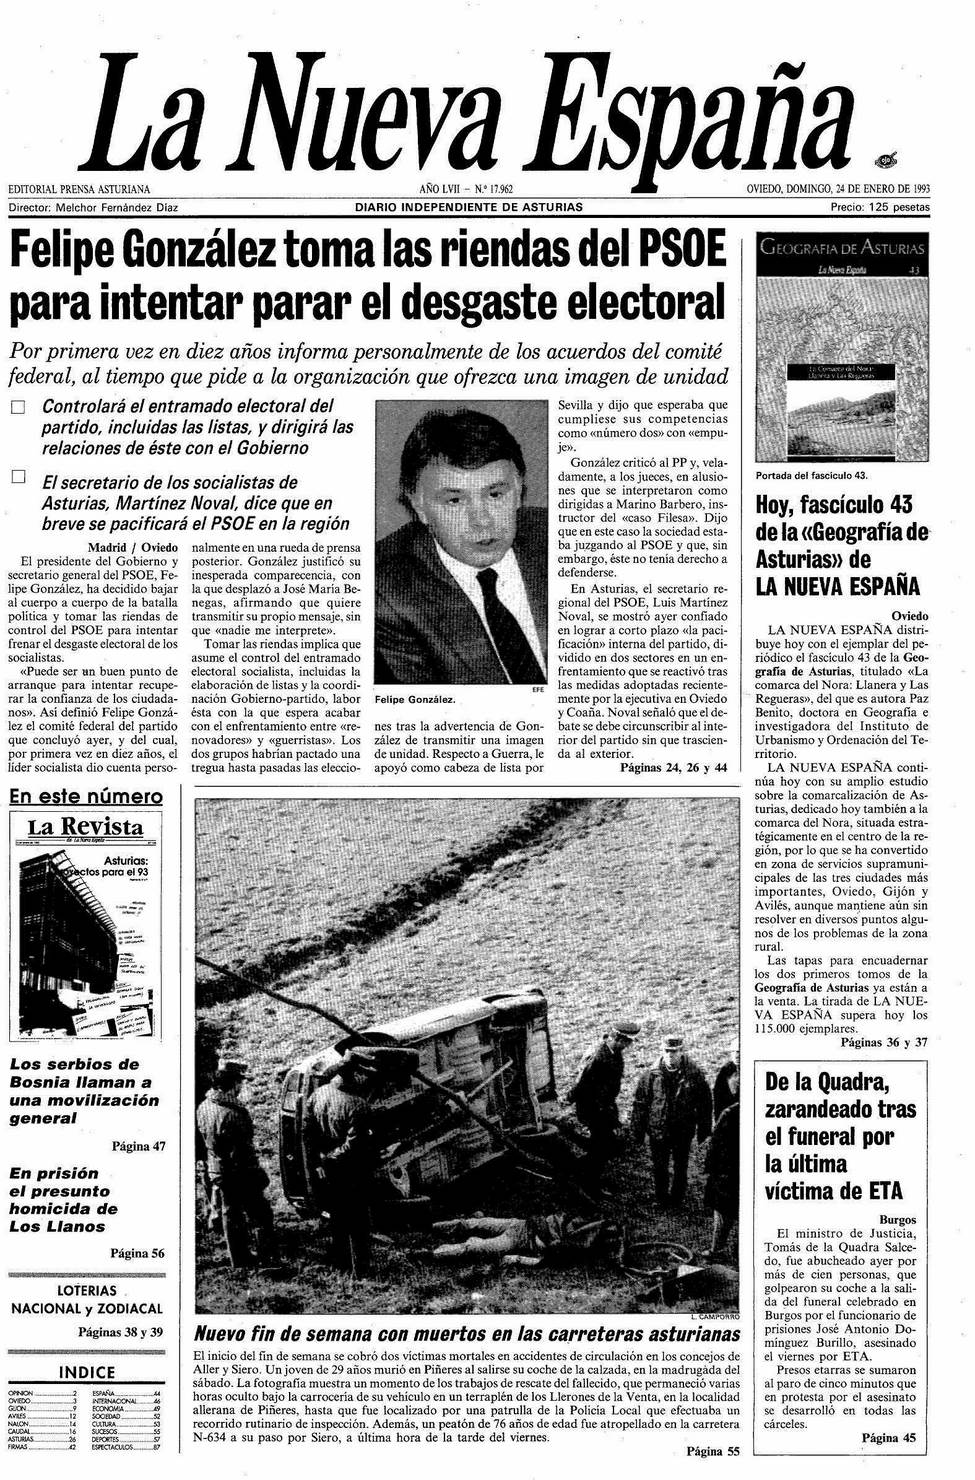 Portada del Domingo, 24 de Enero de 1993